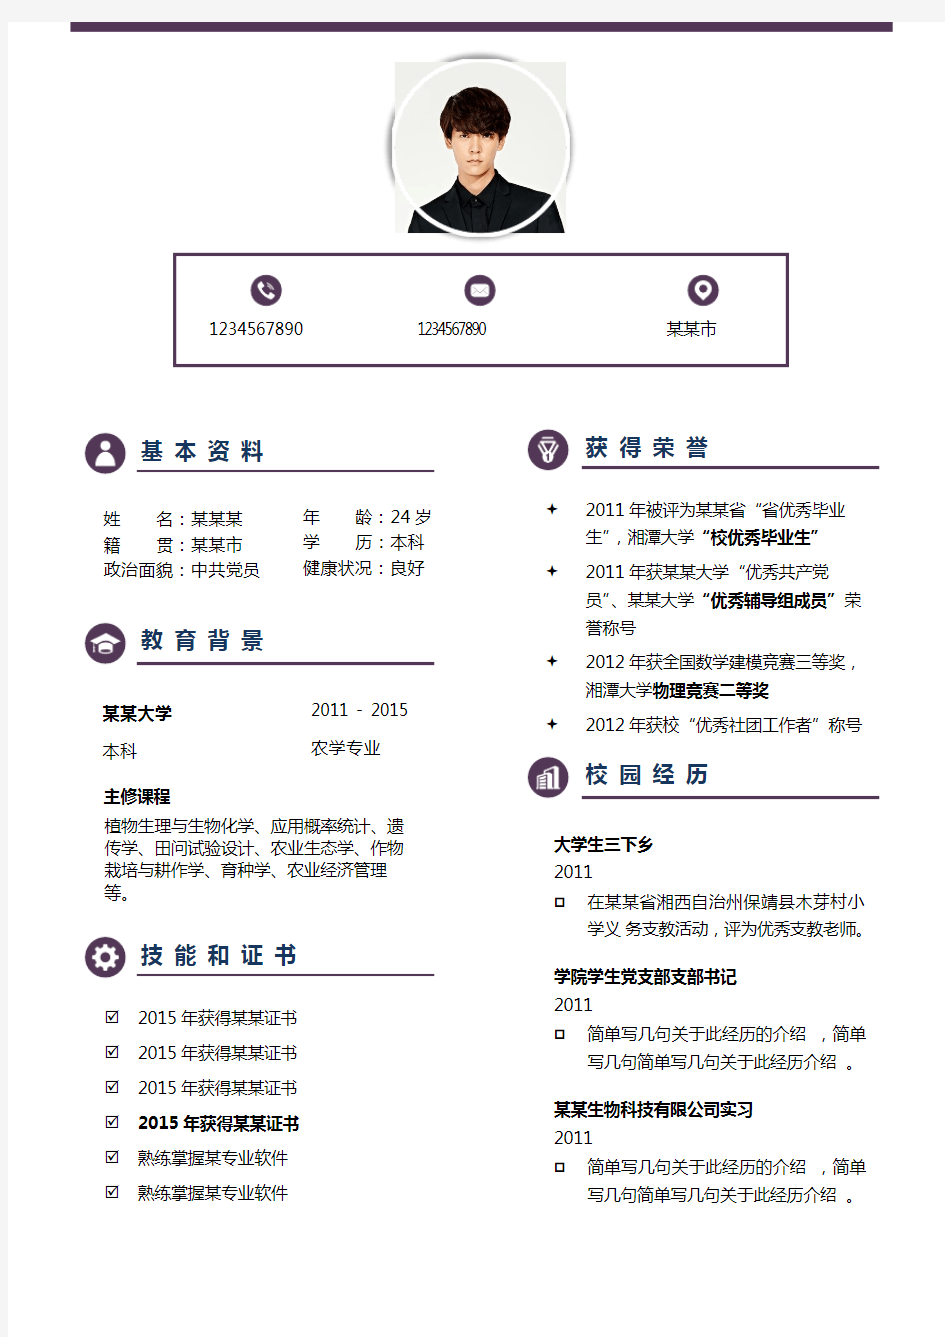 中英文简历模板免费下载